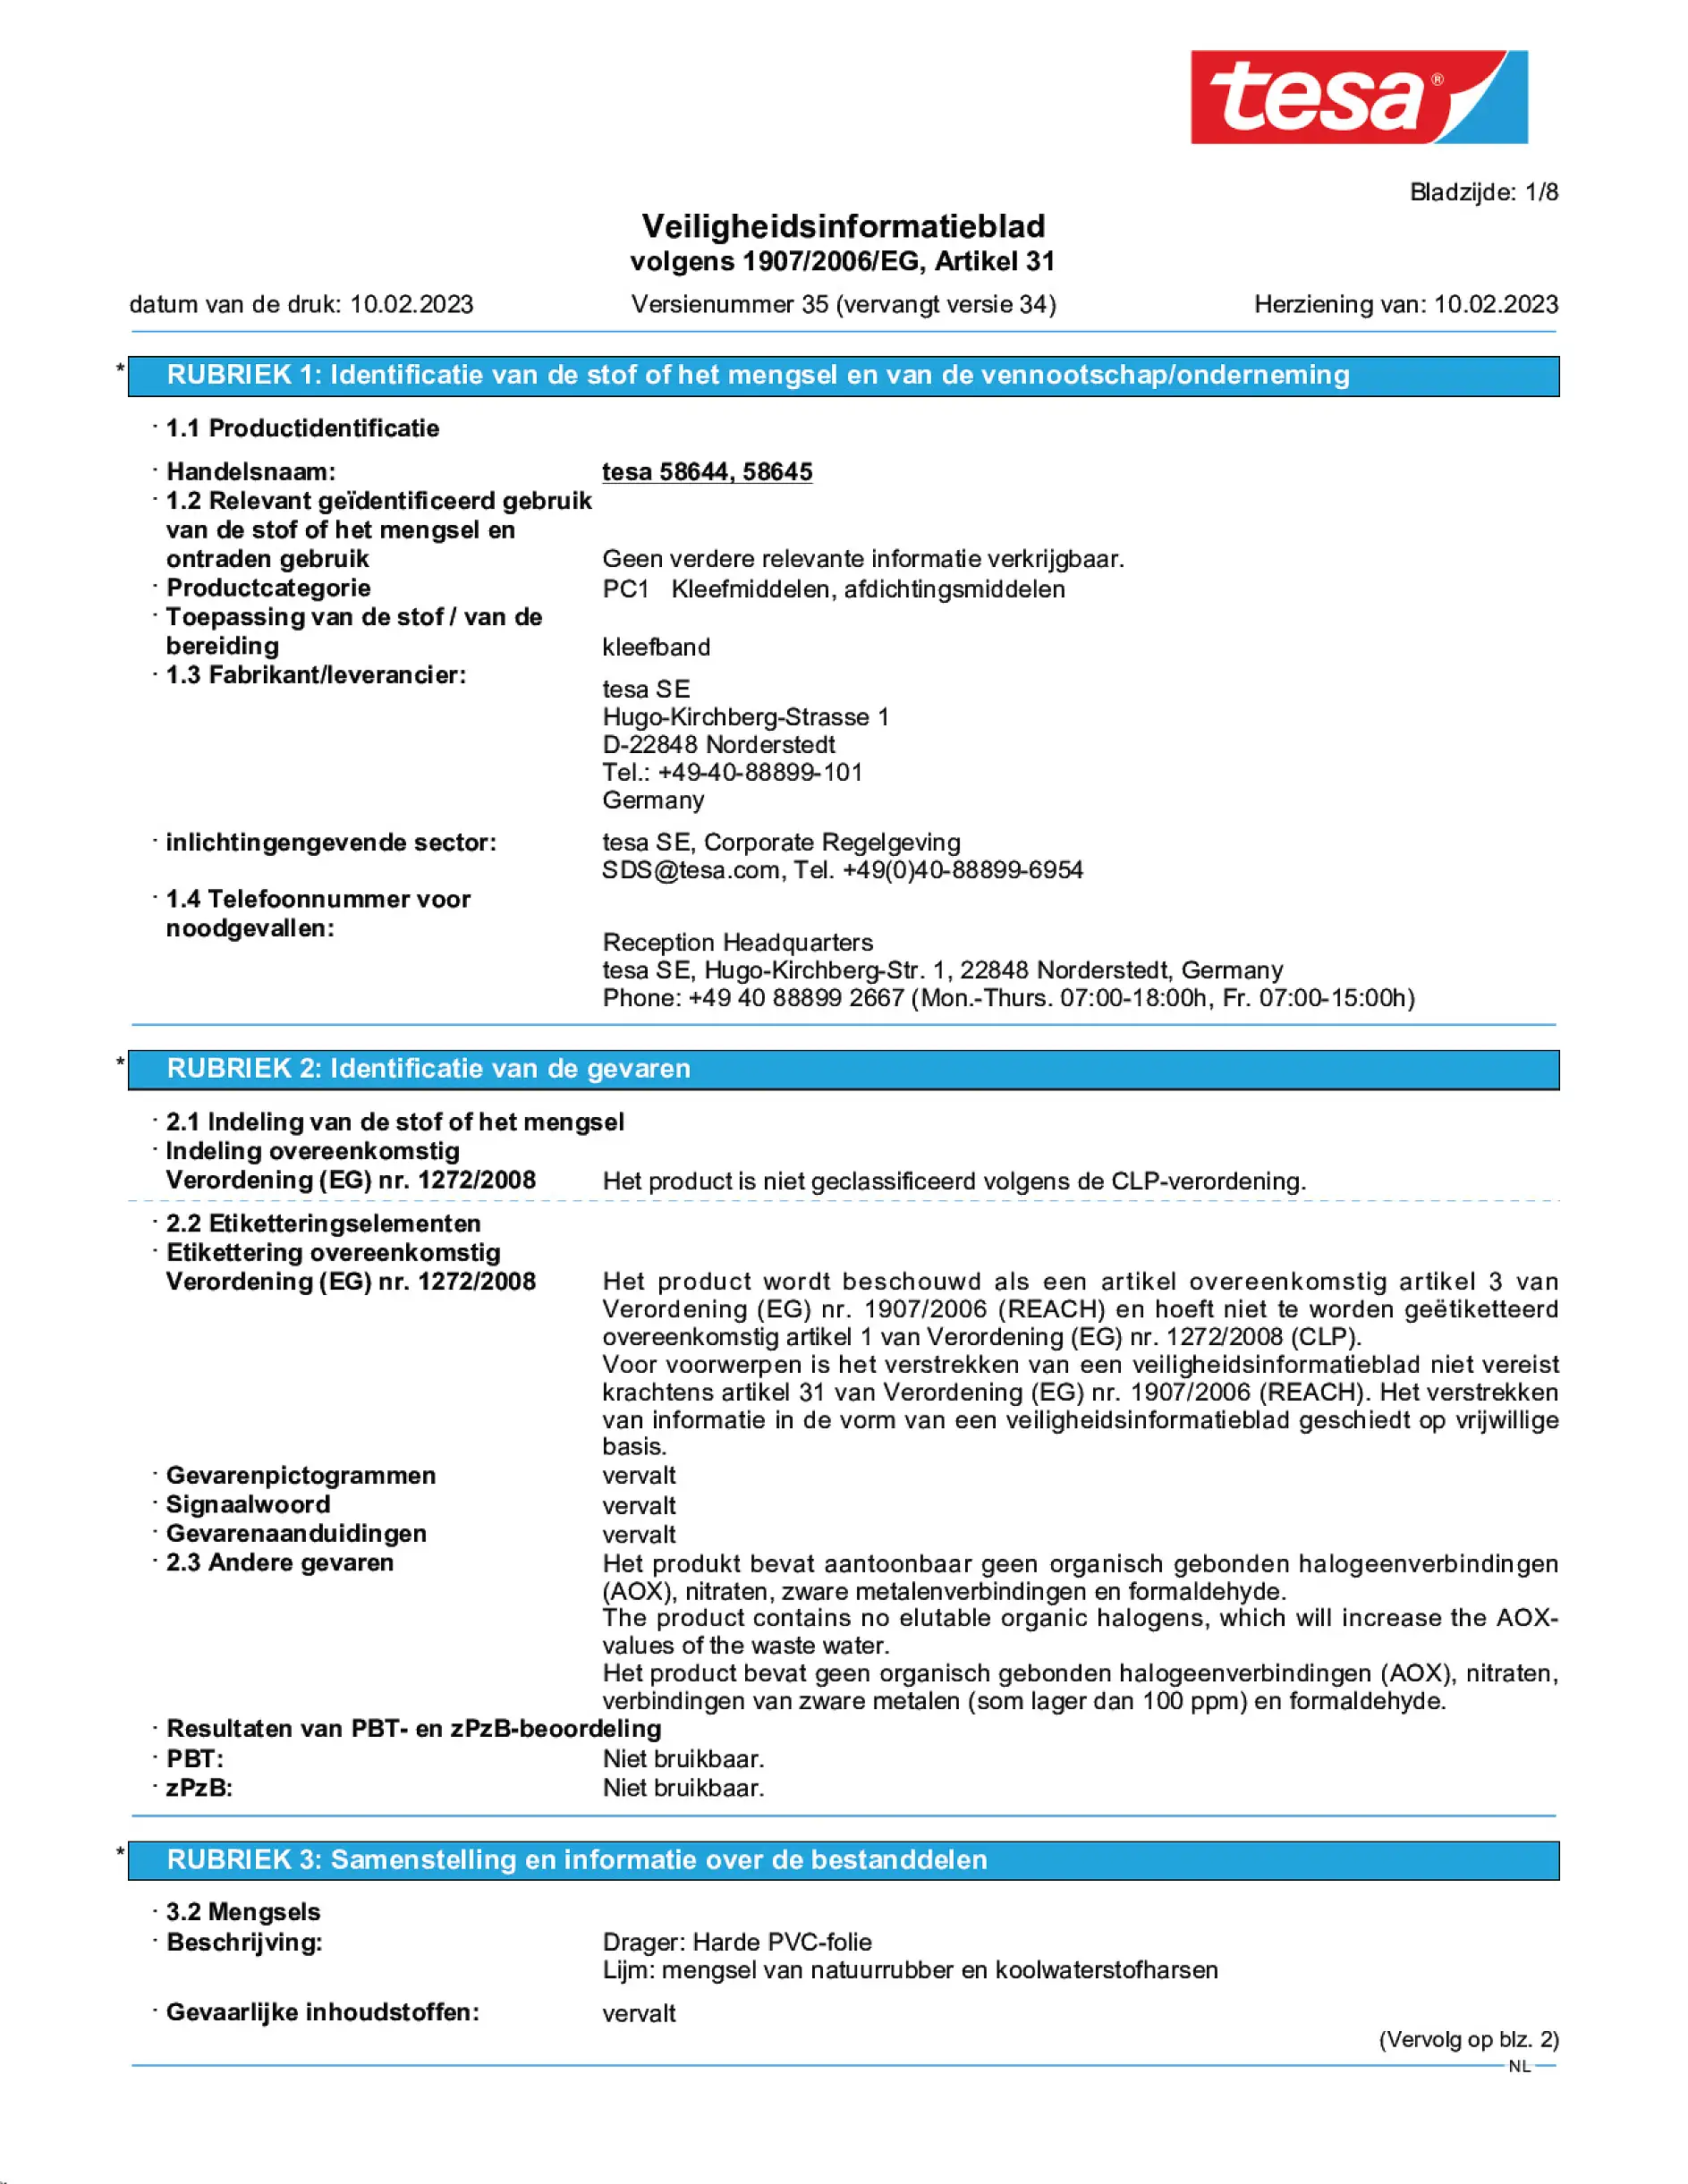 Safety data sheet_tesapack® 4124PVC30_nl-NL_v35